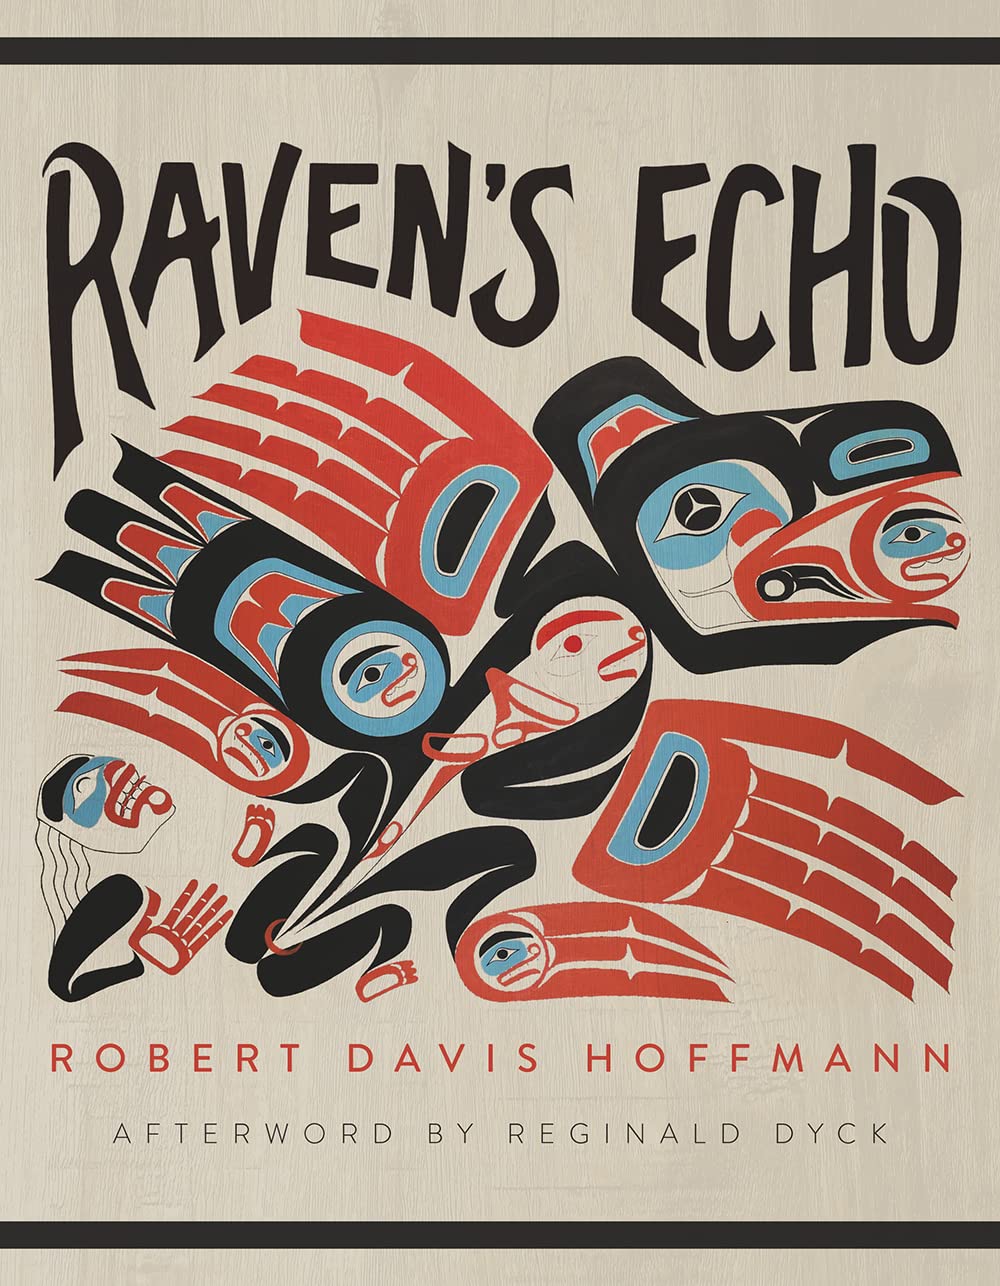 Raven's Echo by Robert Davis Hoffman